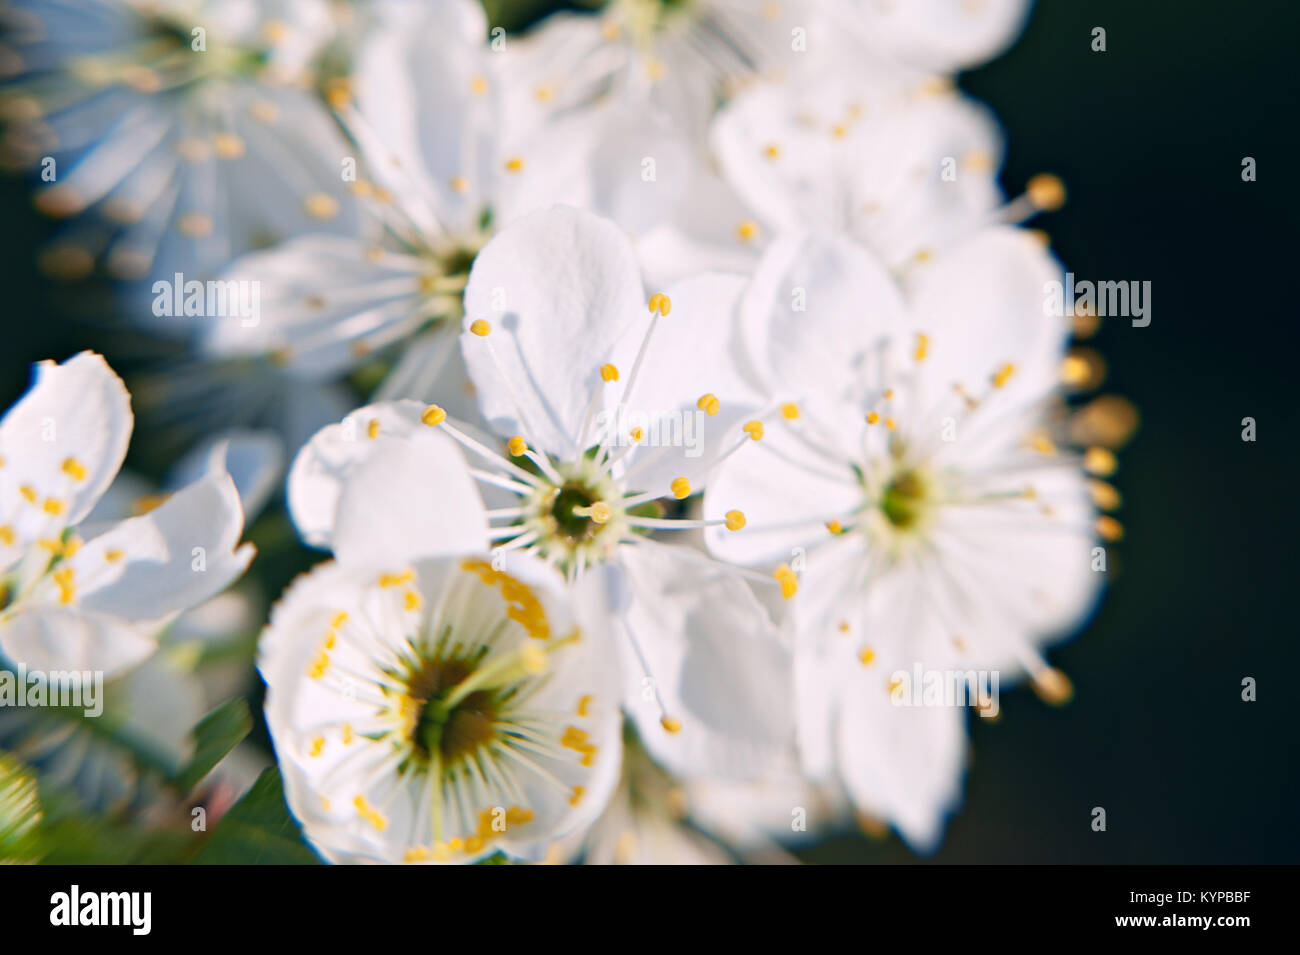 Photo du pommier à fleurs avec des fleurs blanches et jaune sur fond vert bokeh Banque D'Images